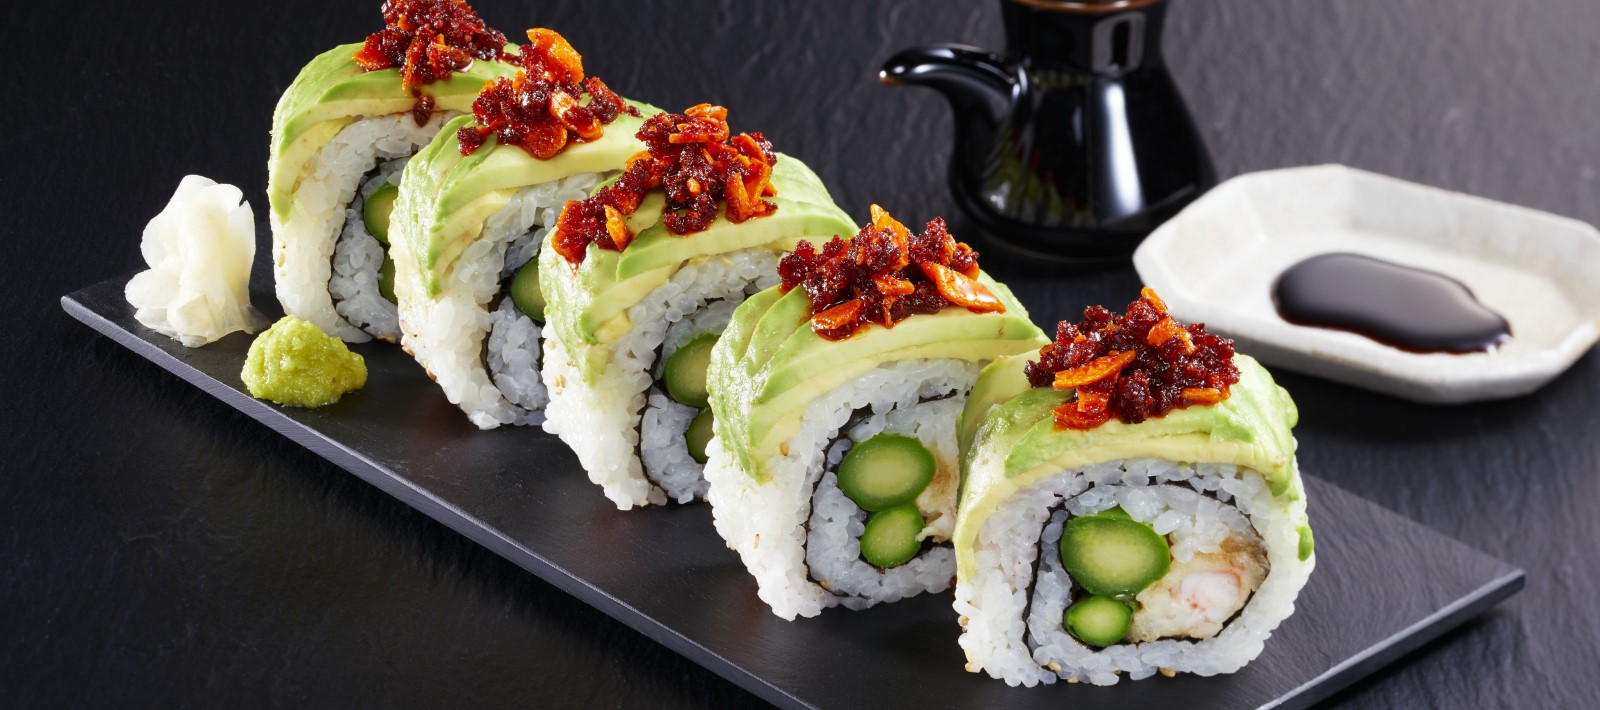 Доставка суши - как выбрать идеальный сет